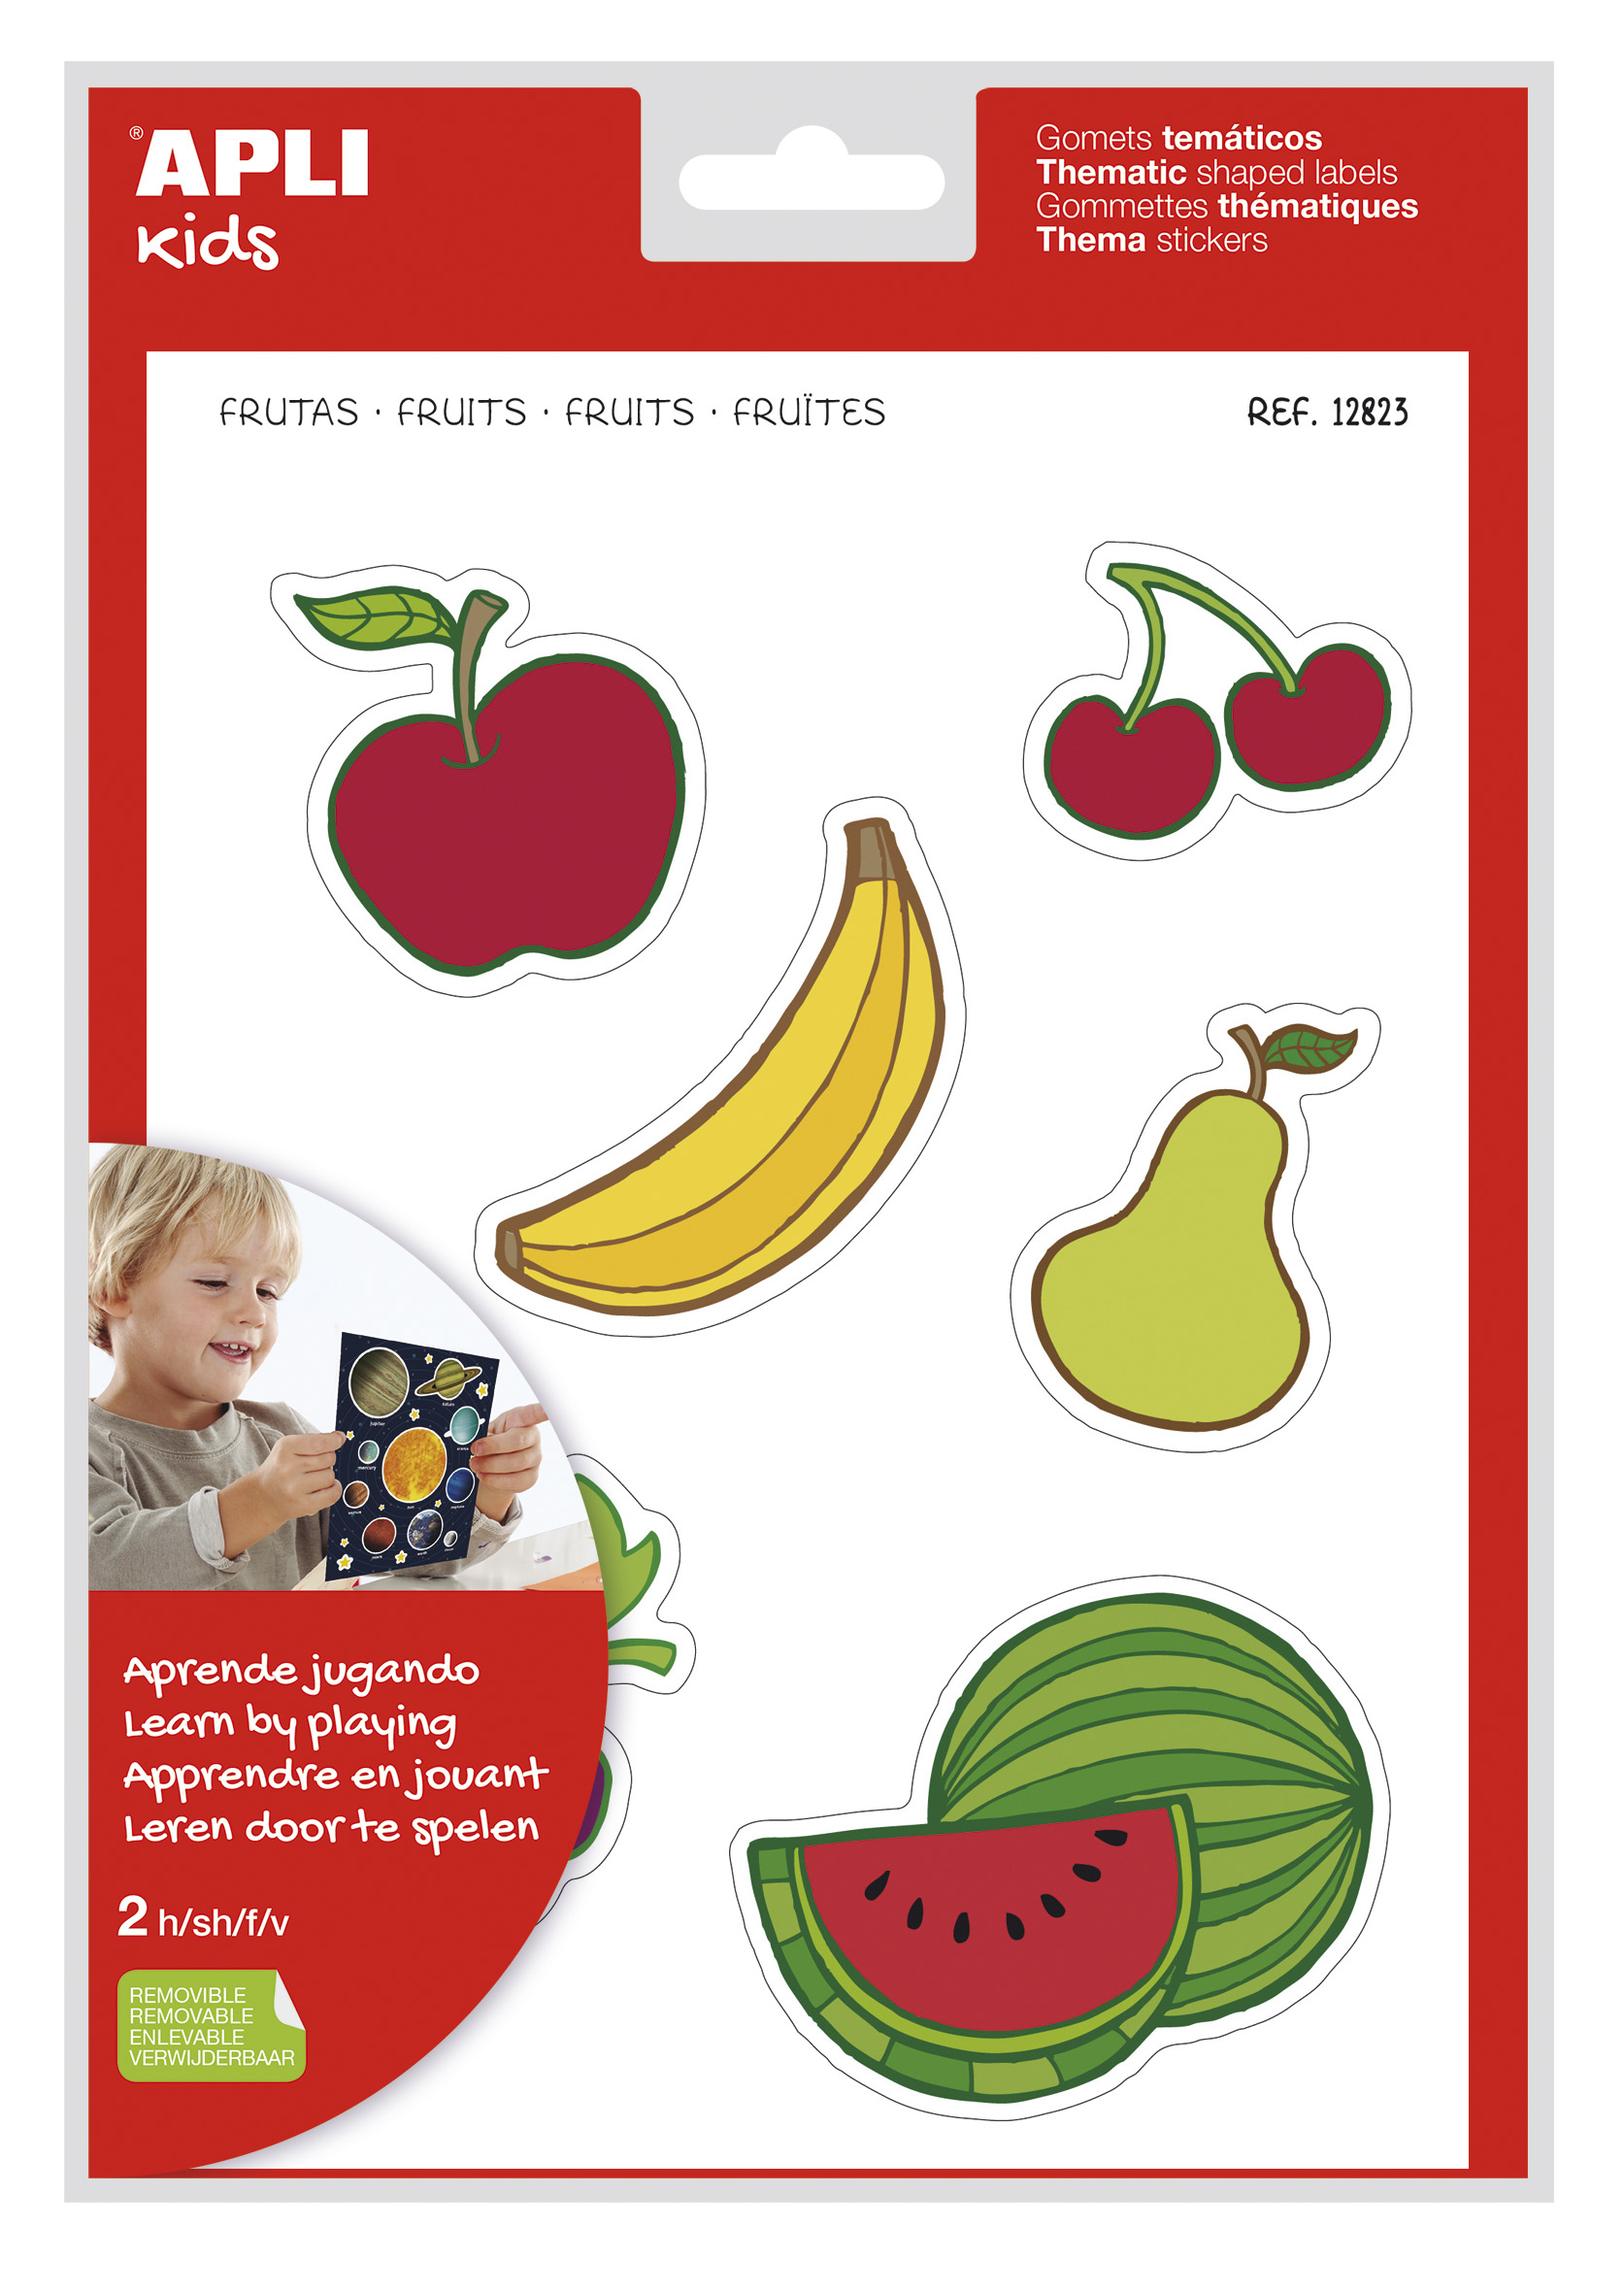 LOT de 5 Apli Fruit Theme Stickers xL - 22 Stickers sur 2 Feuilles A4 - Développé avec des éducateurs - Adhésif Amovible - Sûr et Écologique - Illustrations Amusantes - Taille XL sans Bordure - Coloré